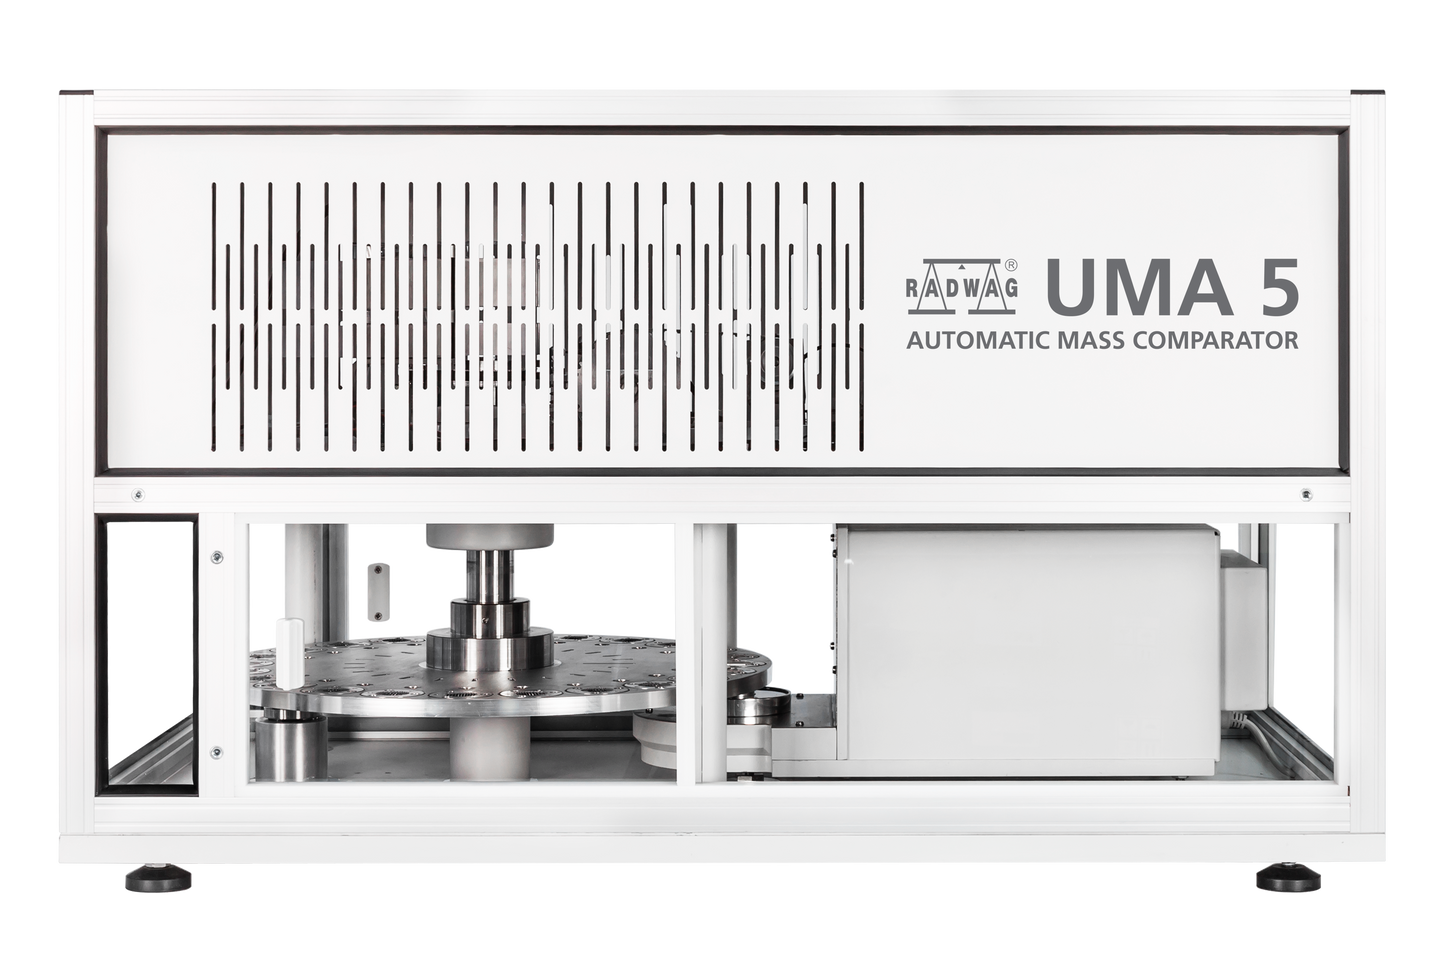 UMA 2.5Y.F automatisk vejesystem kan let tilpasses enhver laboratoriebetingelse. Enhedens størrelse letter placeringen på anti-vibrationsbordet af standarddimensioner.